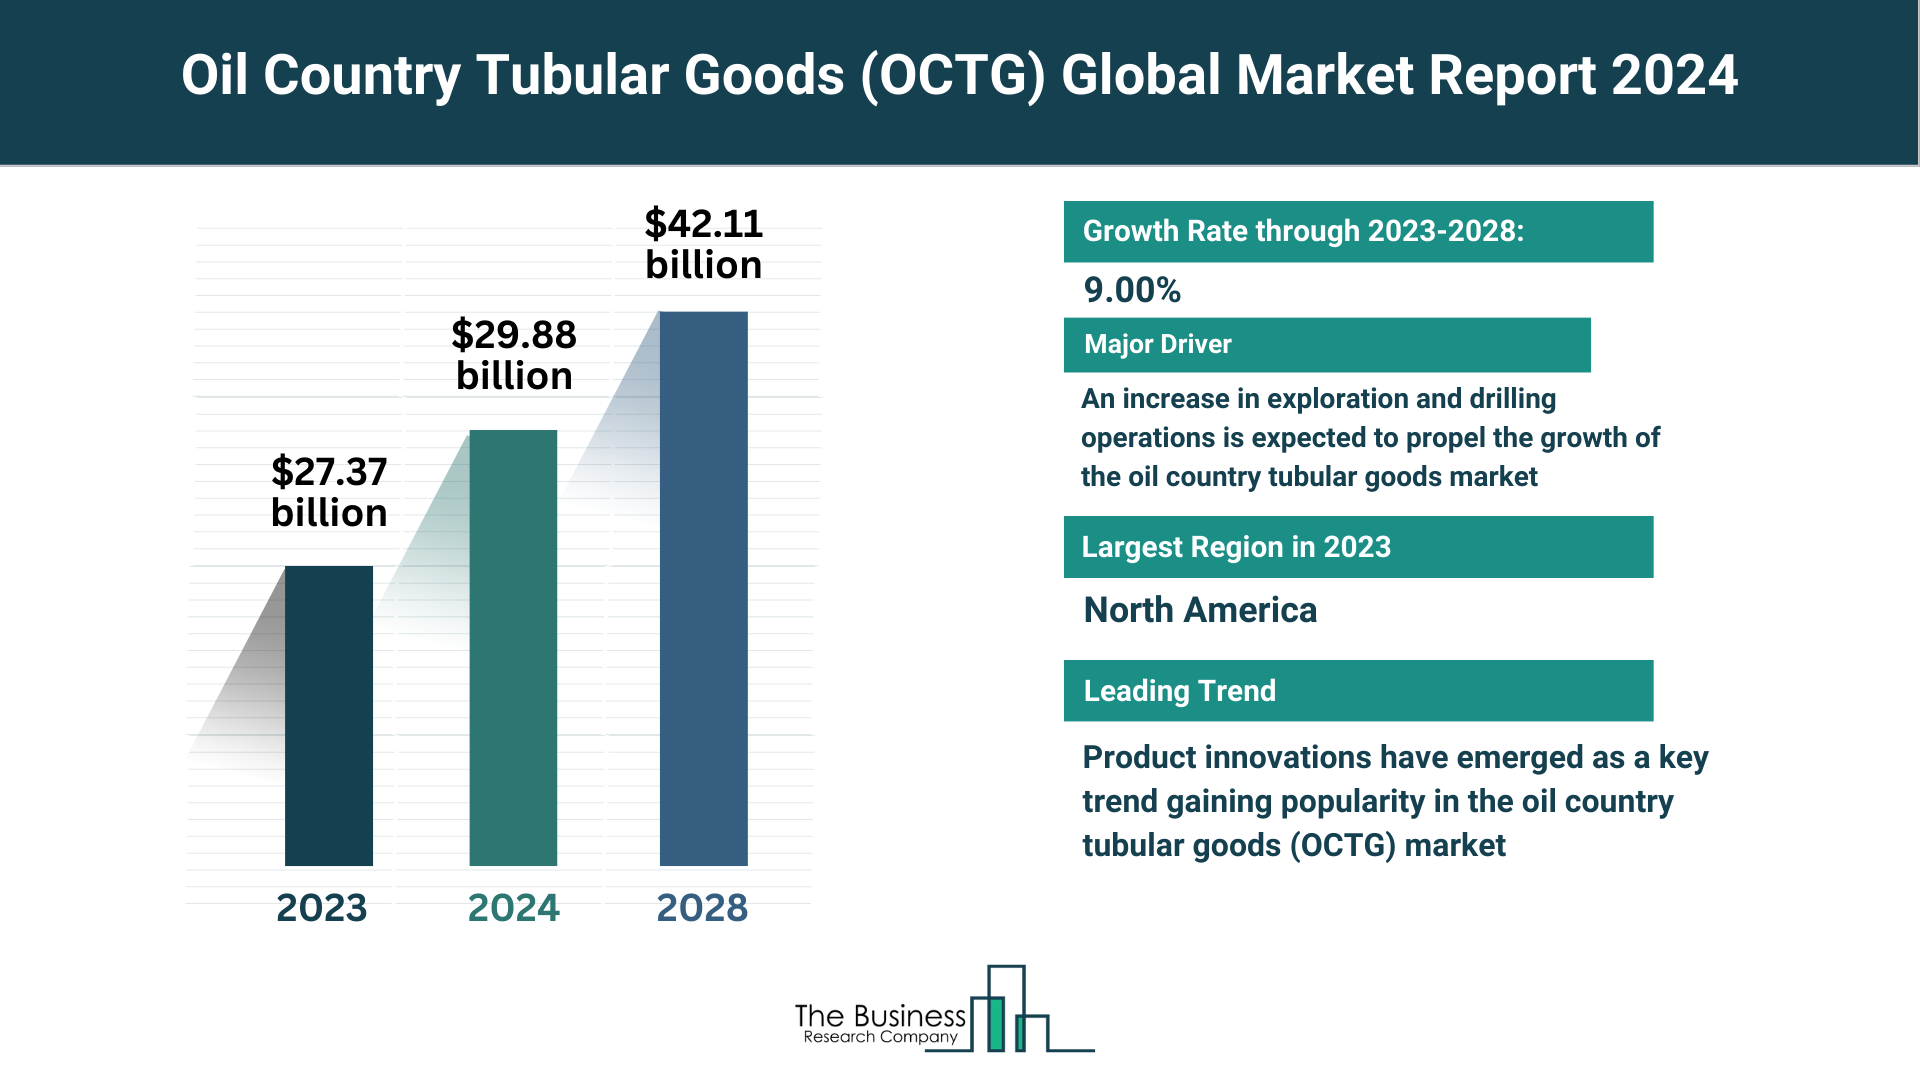 Global Oil Country Tubular Goods (OCTG) Market